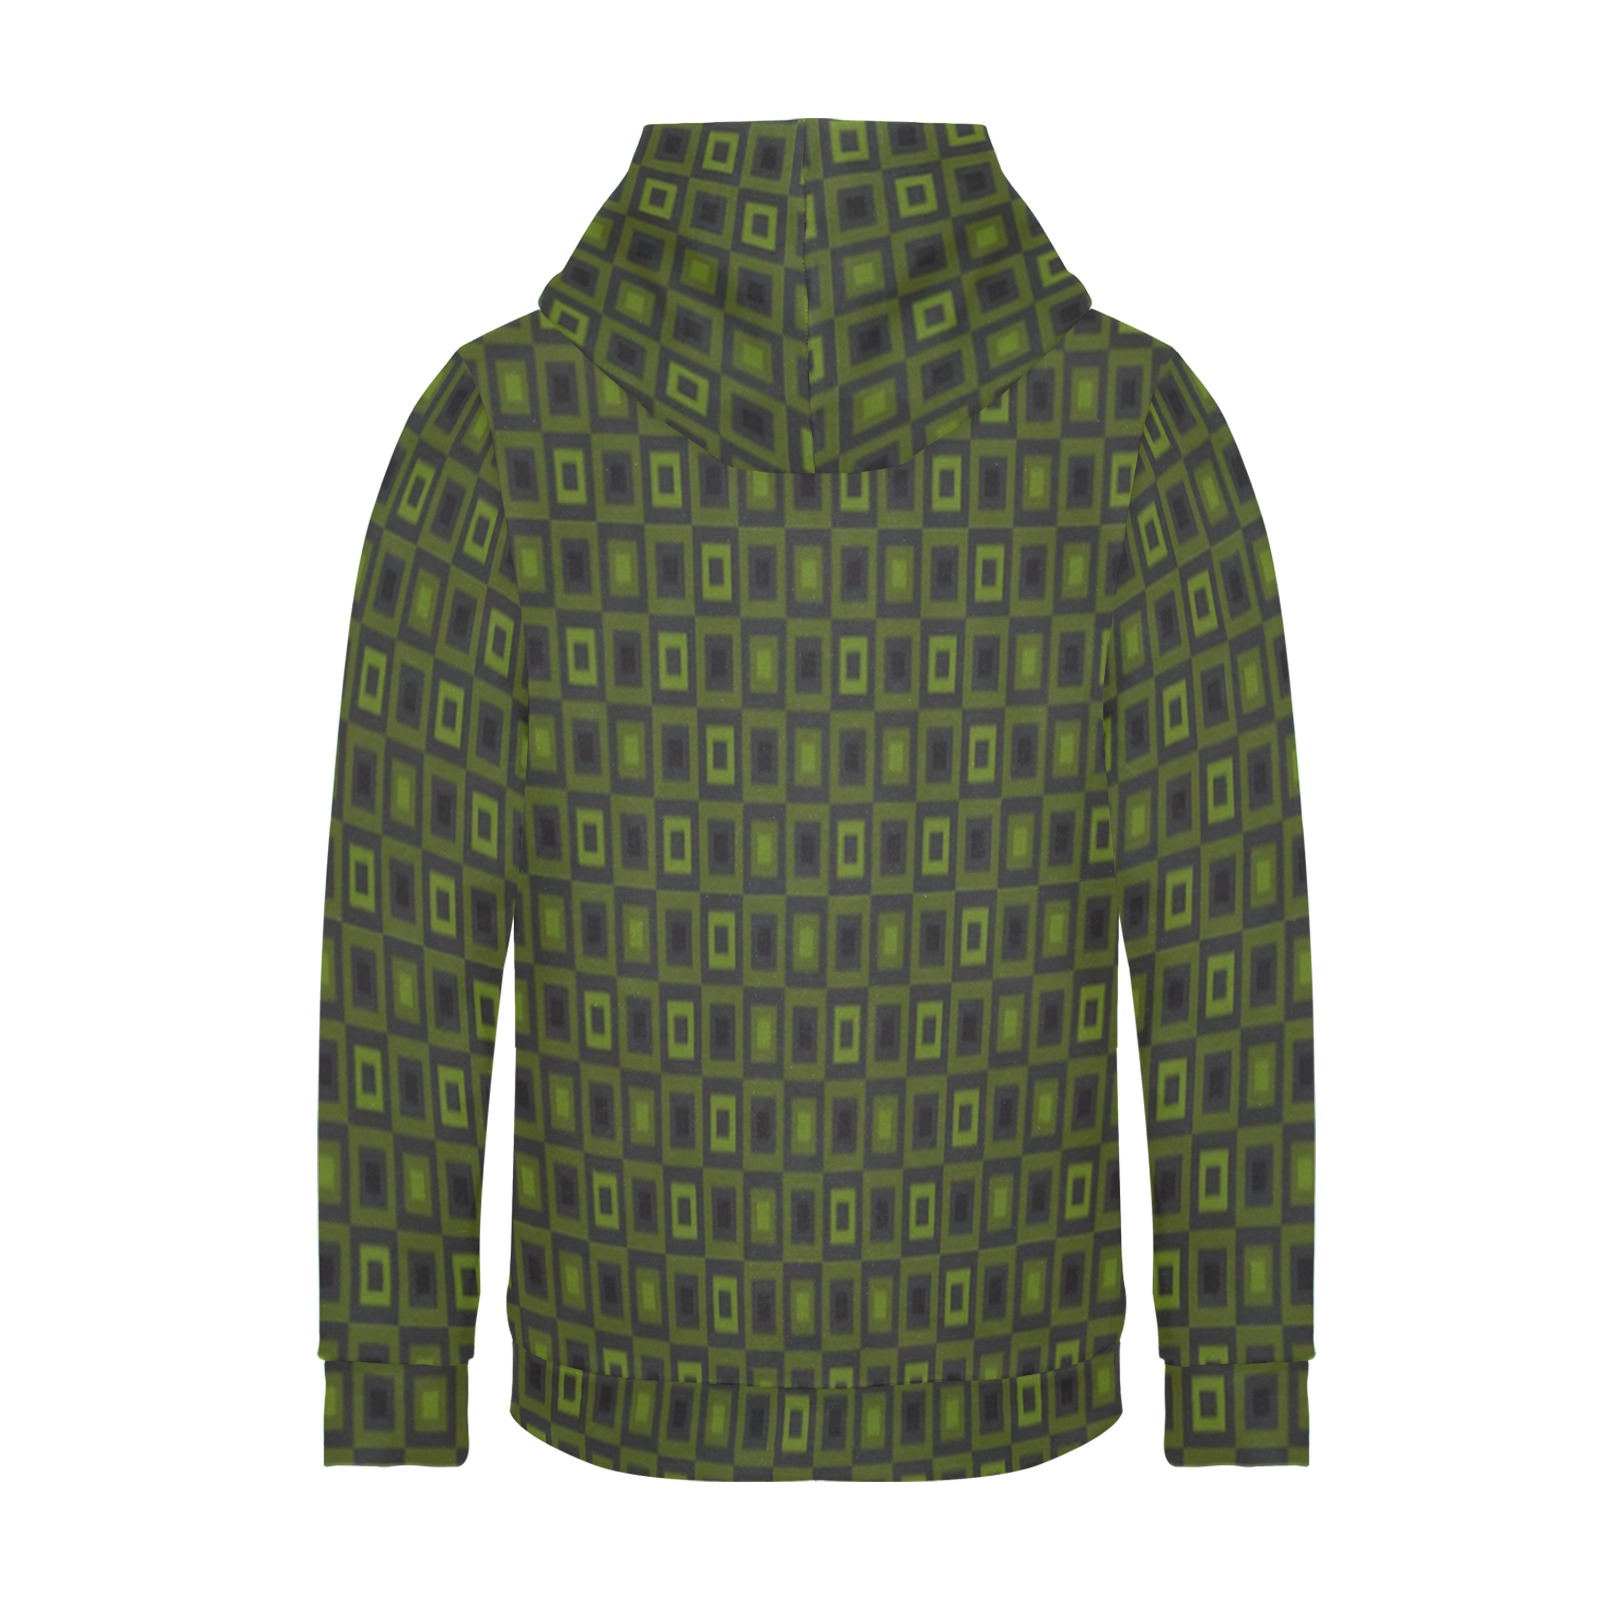 Green blocks Women's Long Sleeve Fleece Hoodie (Model H55)